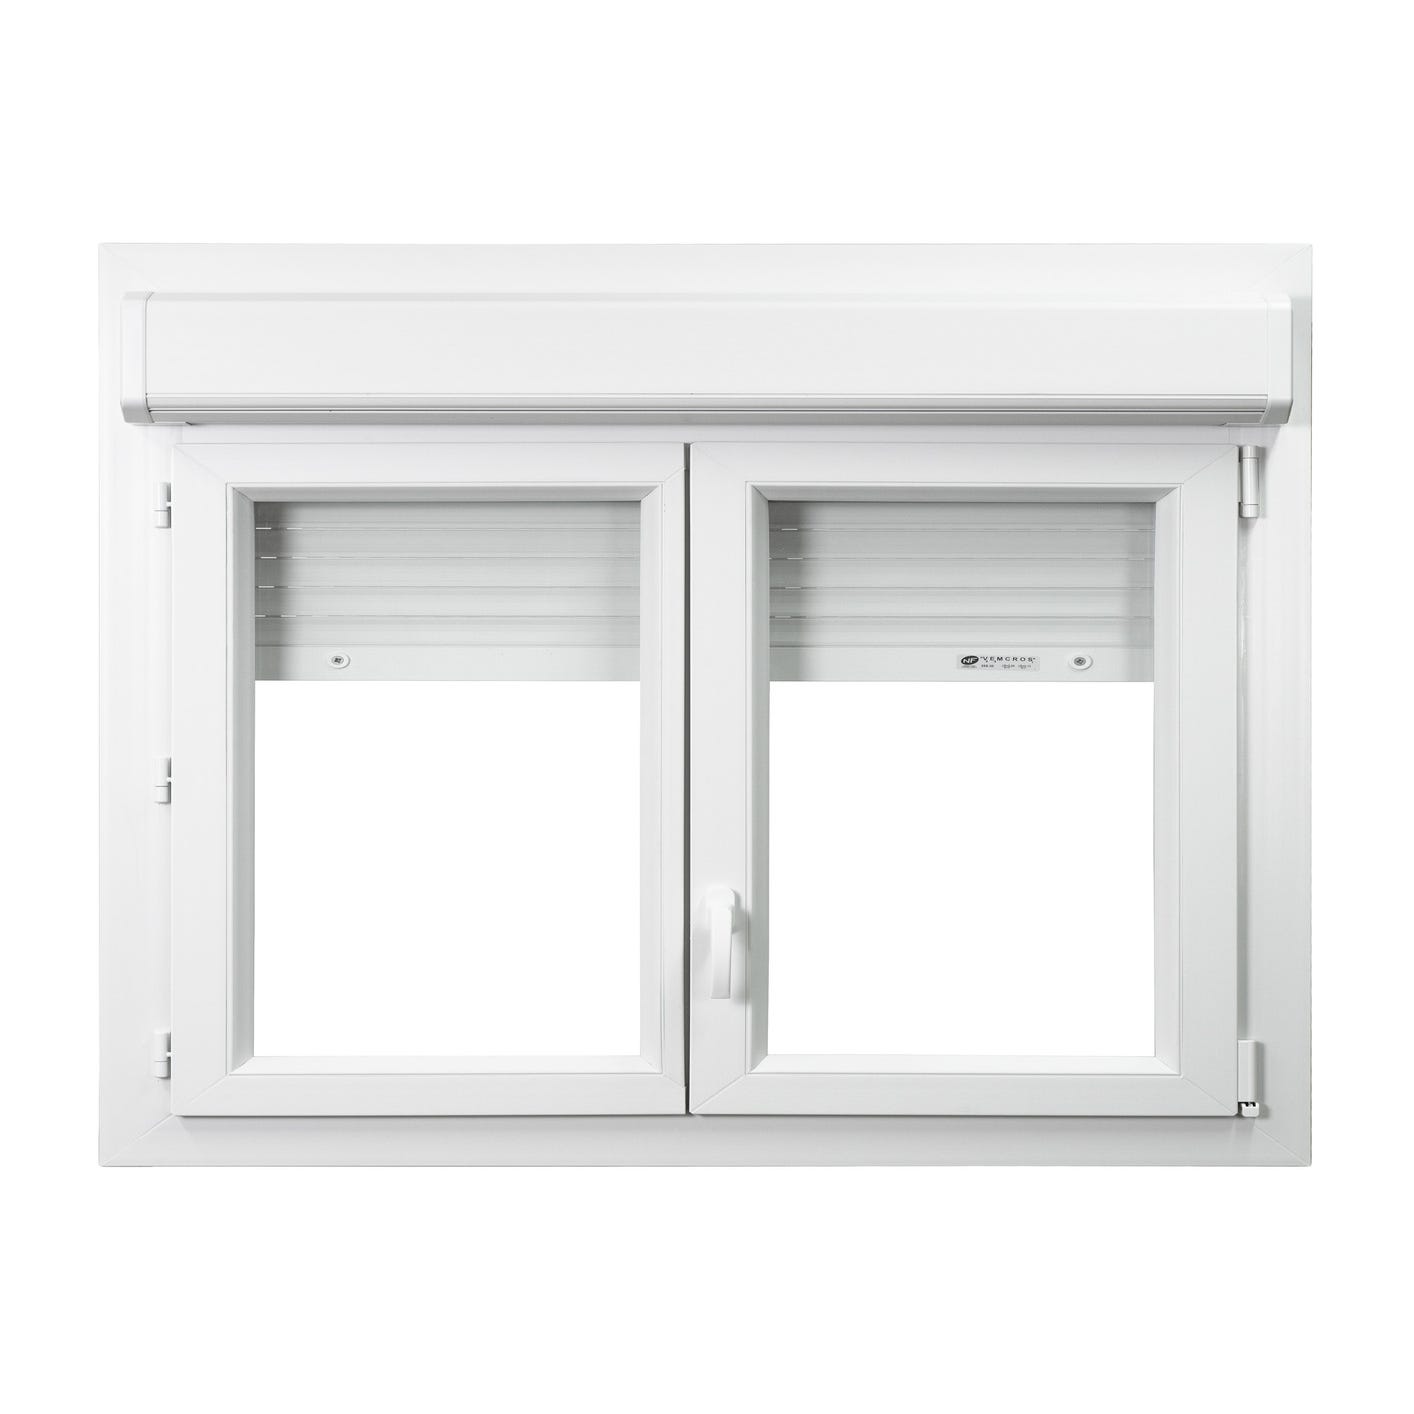 Fenêtre PVC avec volet roulant intégré monobloc Ob 2 vantaux H.75 x L.100 cm - GROSFILLEX 0